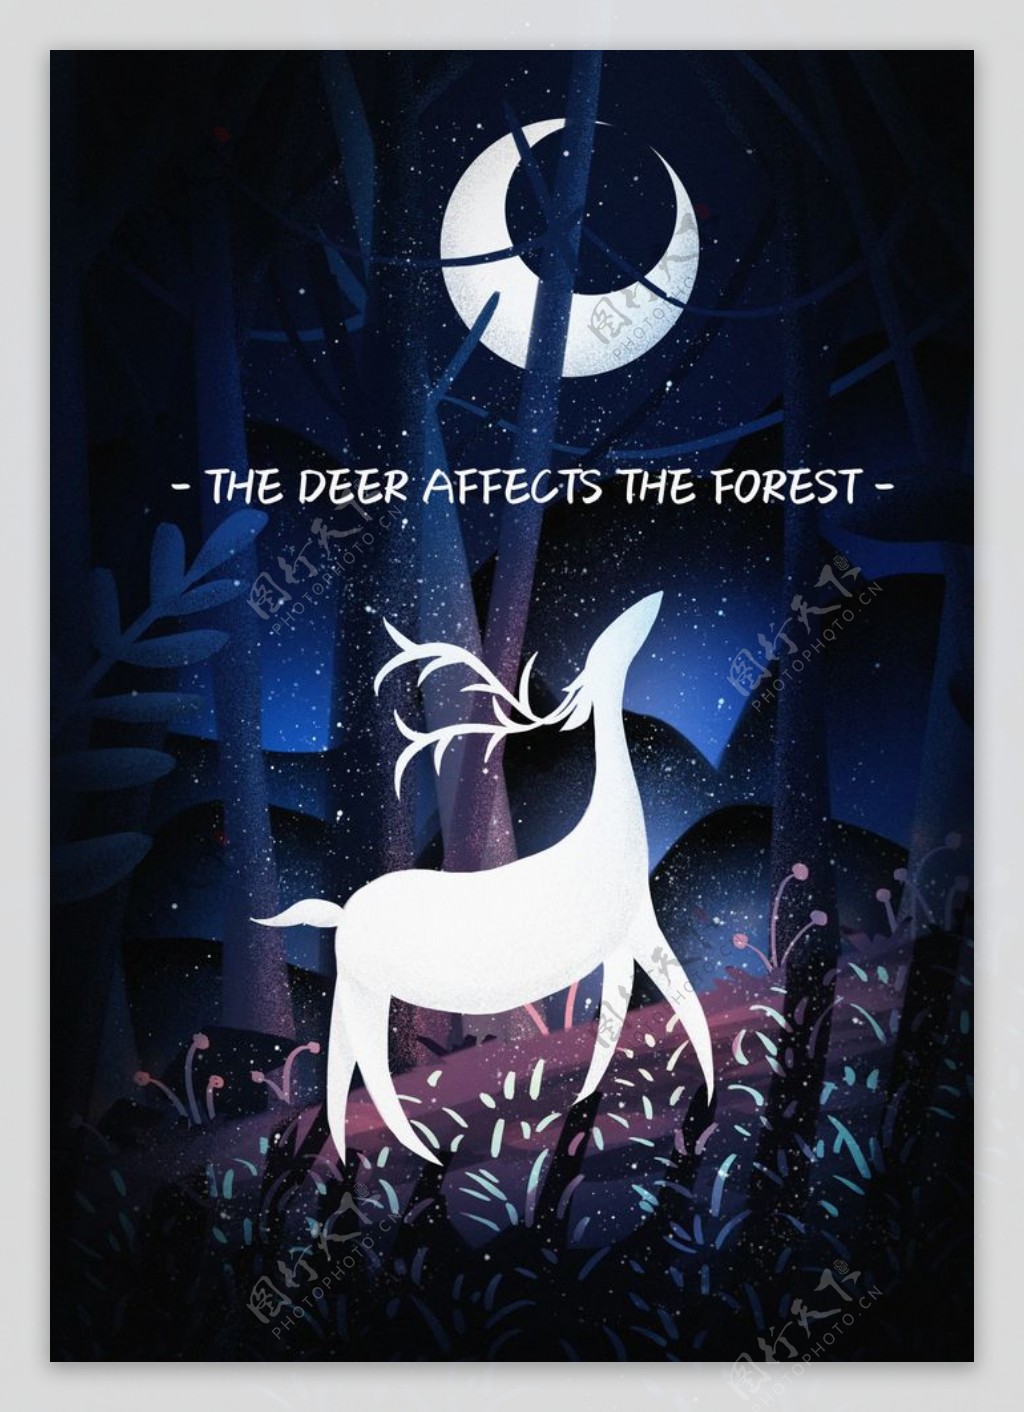 森林中的小鹿场景插画图片